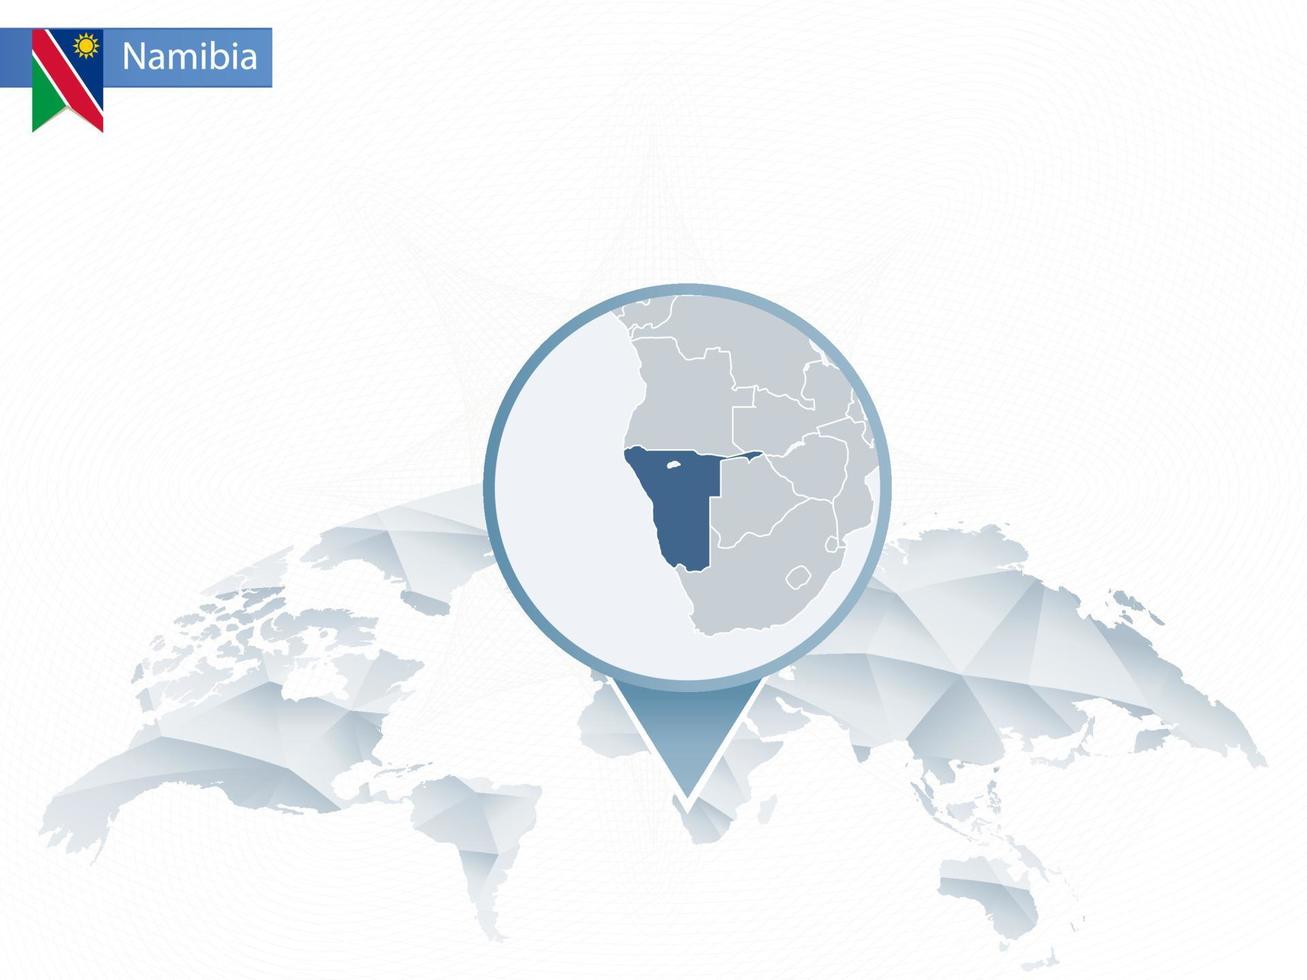 abstrakt rundad världskarta med nålade detaljerad karta över Namibia. vektor